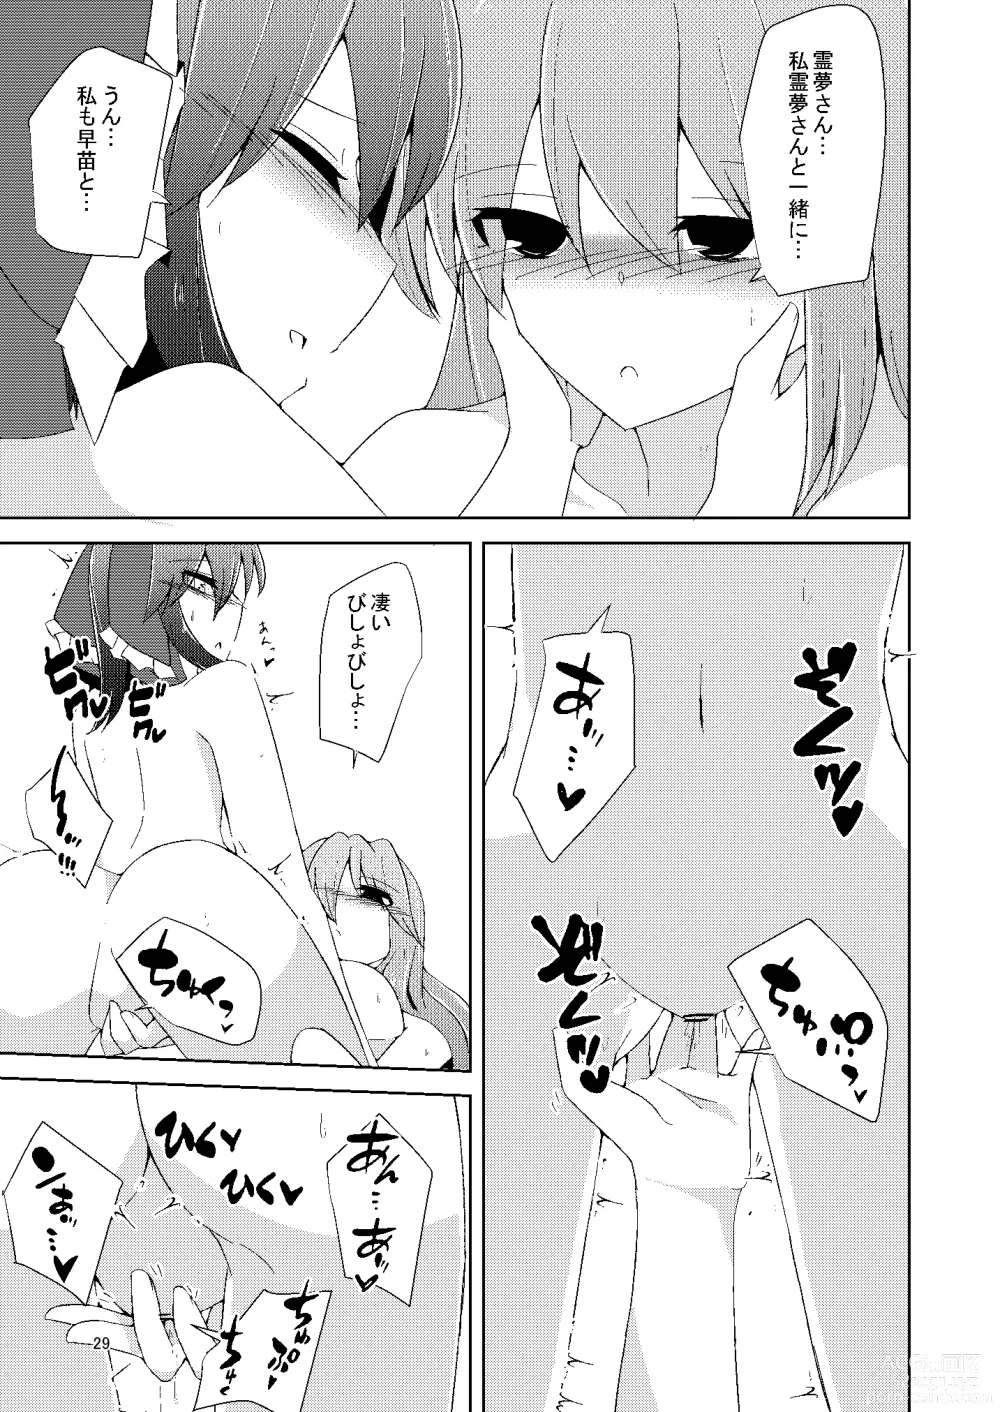 Page 28 of doujinshi Onaji desu ne